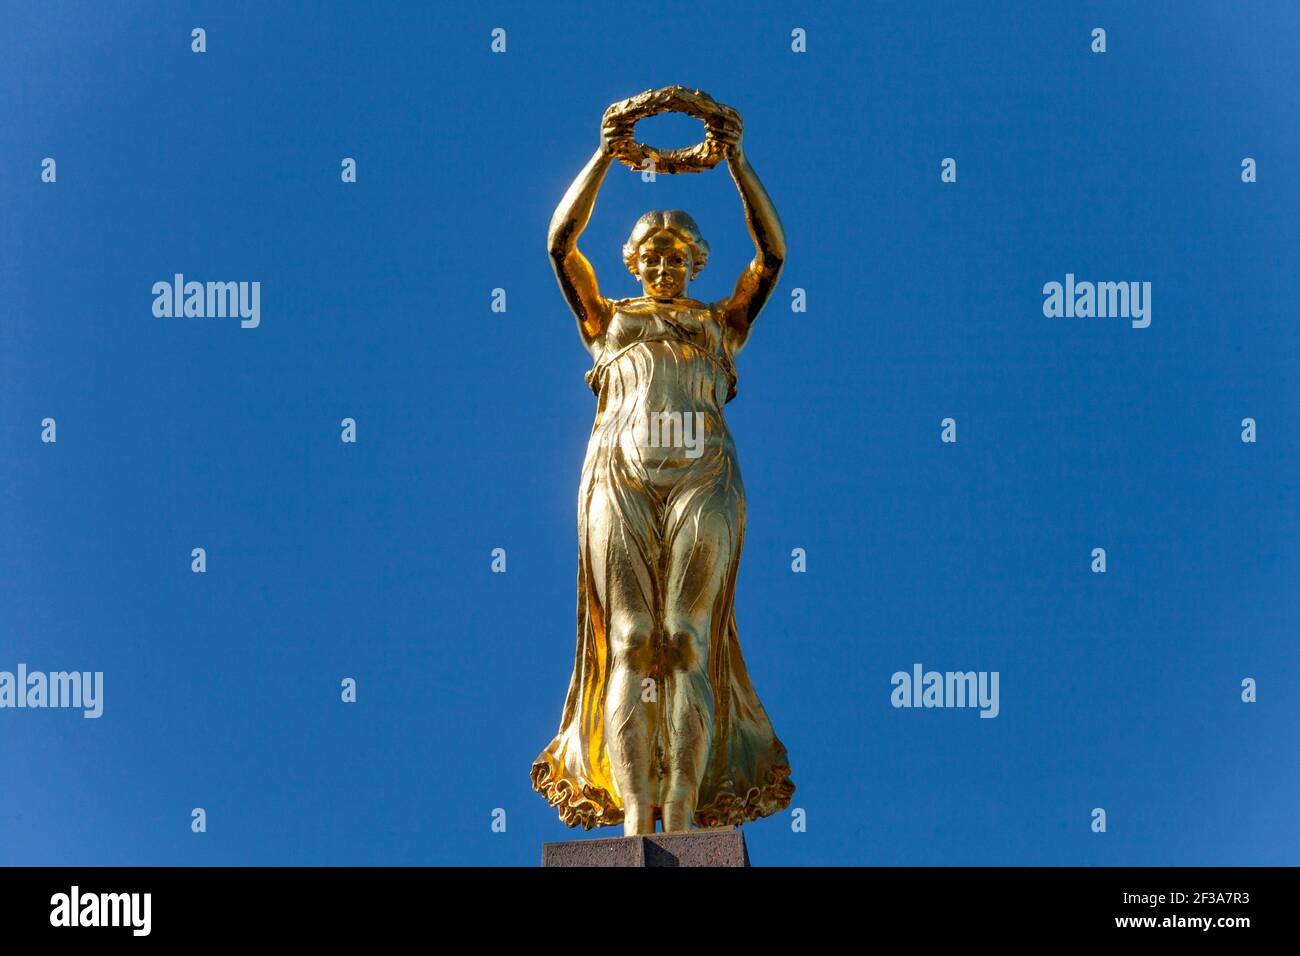 Tierra Diploma Desesperado Luxemburgo: La estatua de Gelle Fra, un obelisco conmemorativo de guerra  que apoya a Nike, diosa de la victoria o 'Reina de la Libertad' sosteniendo  una corona de laurel como si p